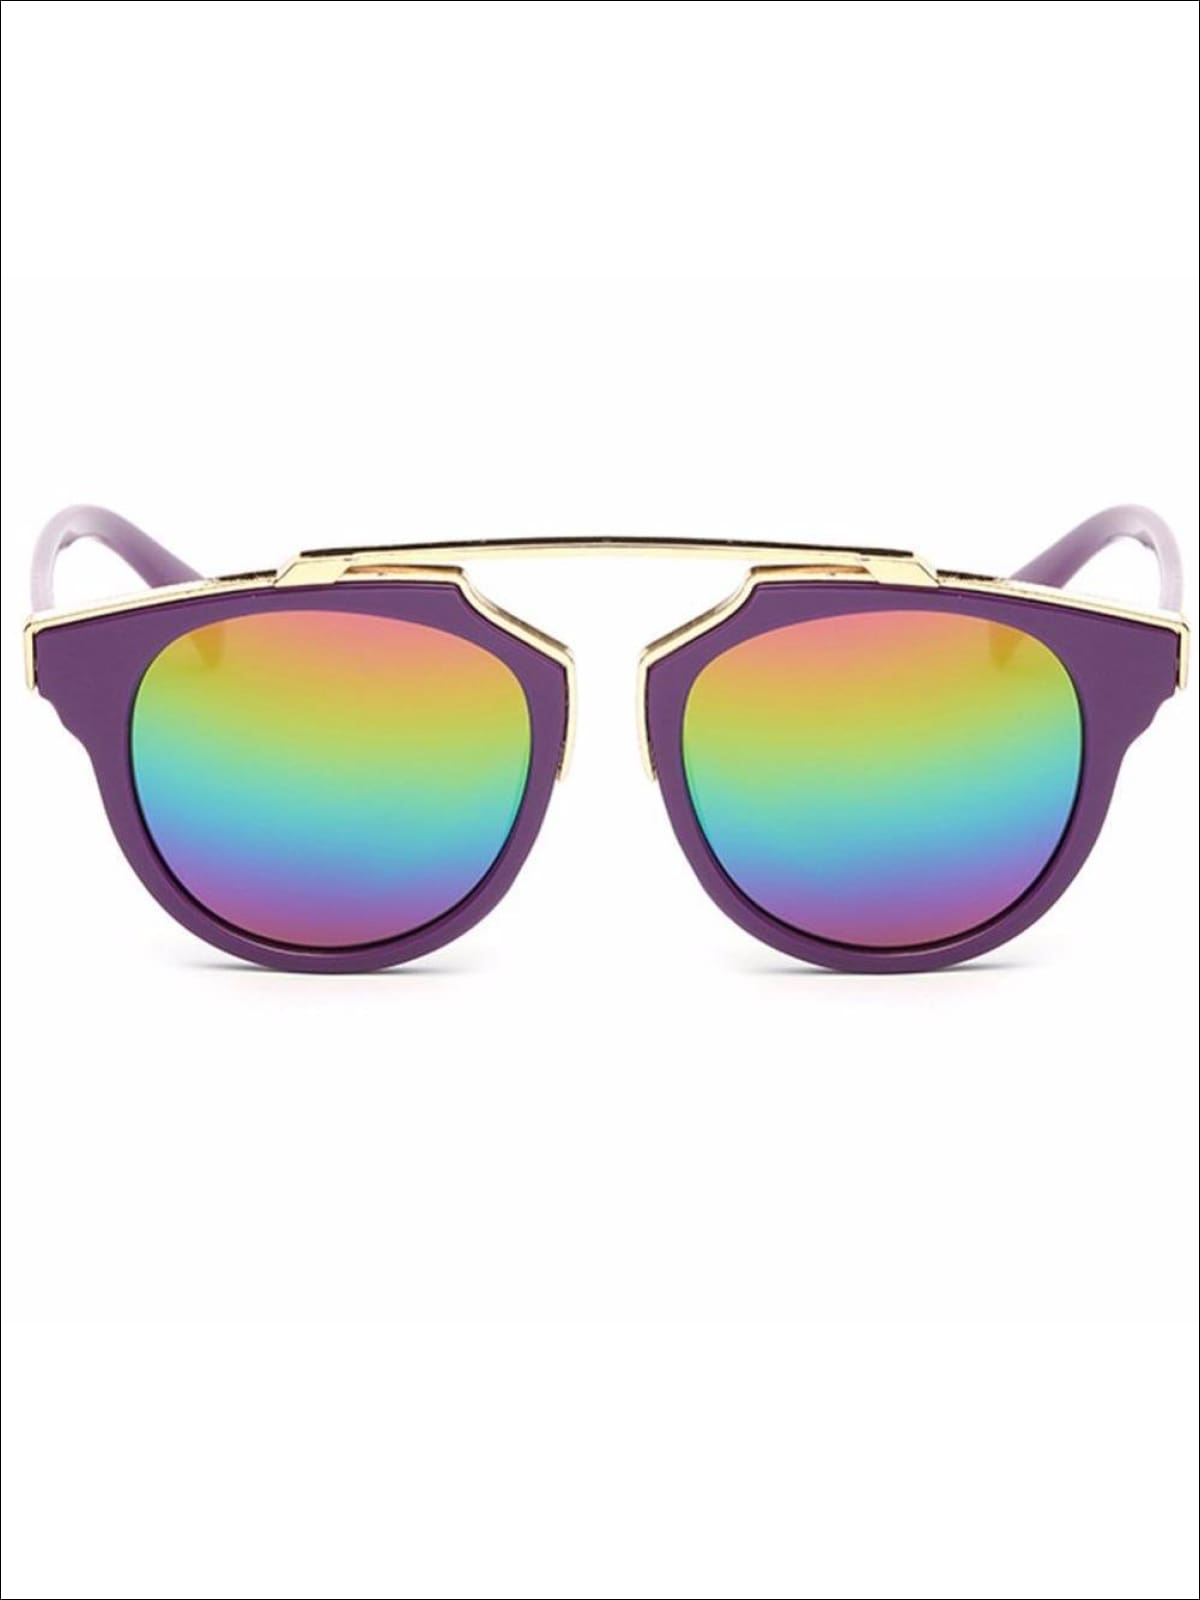 Girls Round Aviator Sunglasses with Gold Detail - Purple / One - Girls Sunglasses